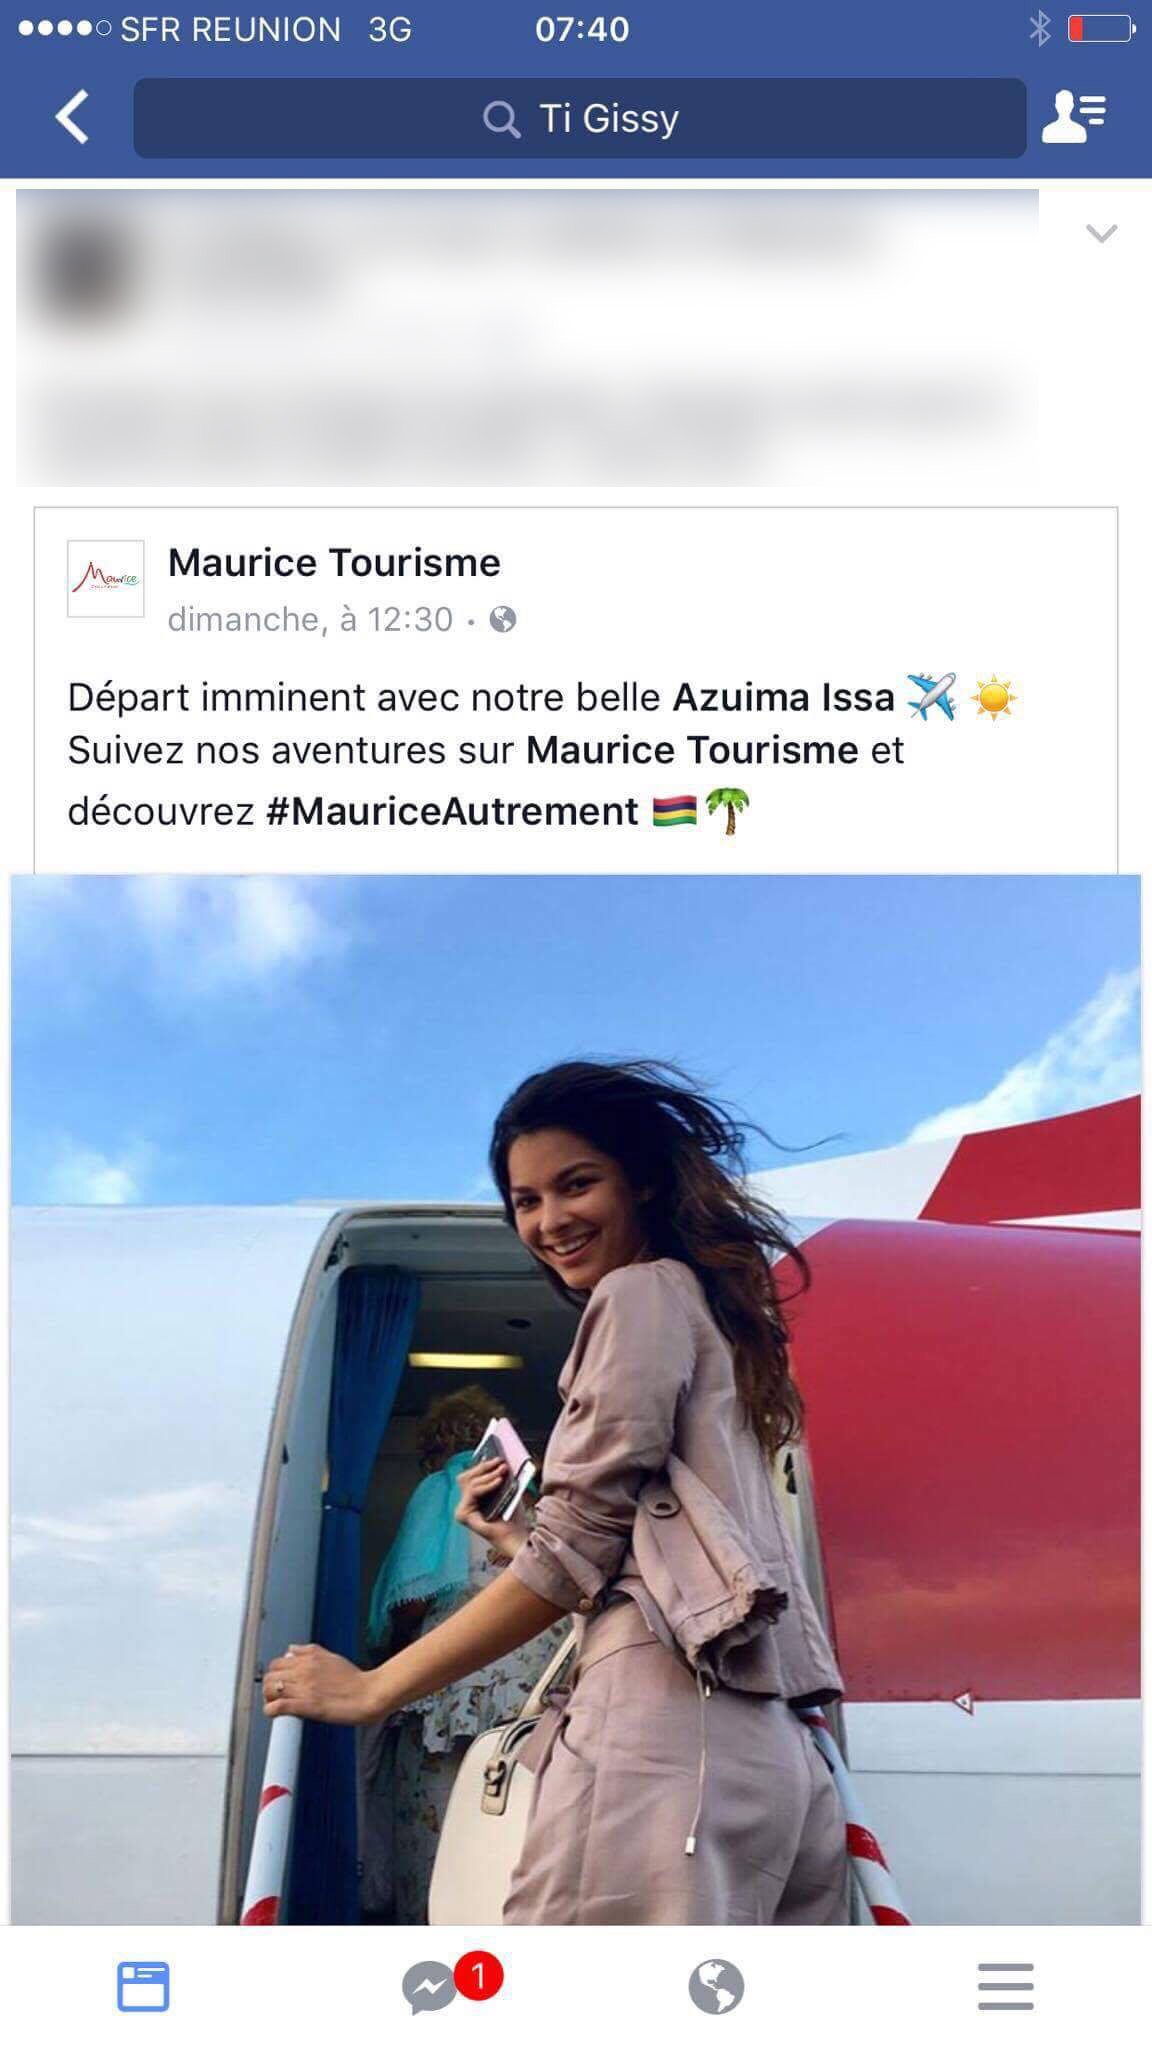 Un an et demi après, on la retrouve en ambassadrice de l'ile Maurice. Avec un véritable feuilleton sur les réseaux sociaux. On se croirait revenu à l'époque des "Martine va à l'école" "Martine va à la plage". Sauf que là, c'est "Azuima prend l'avion"...